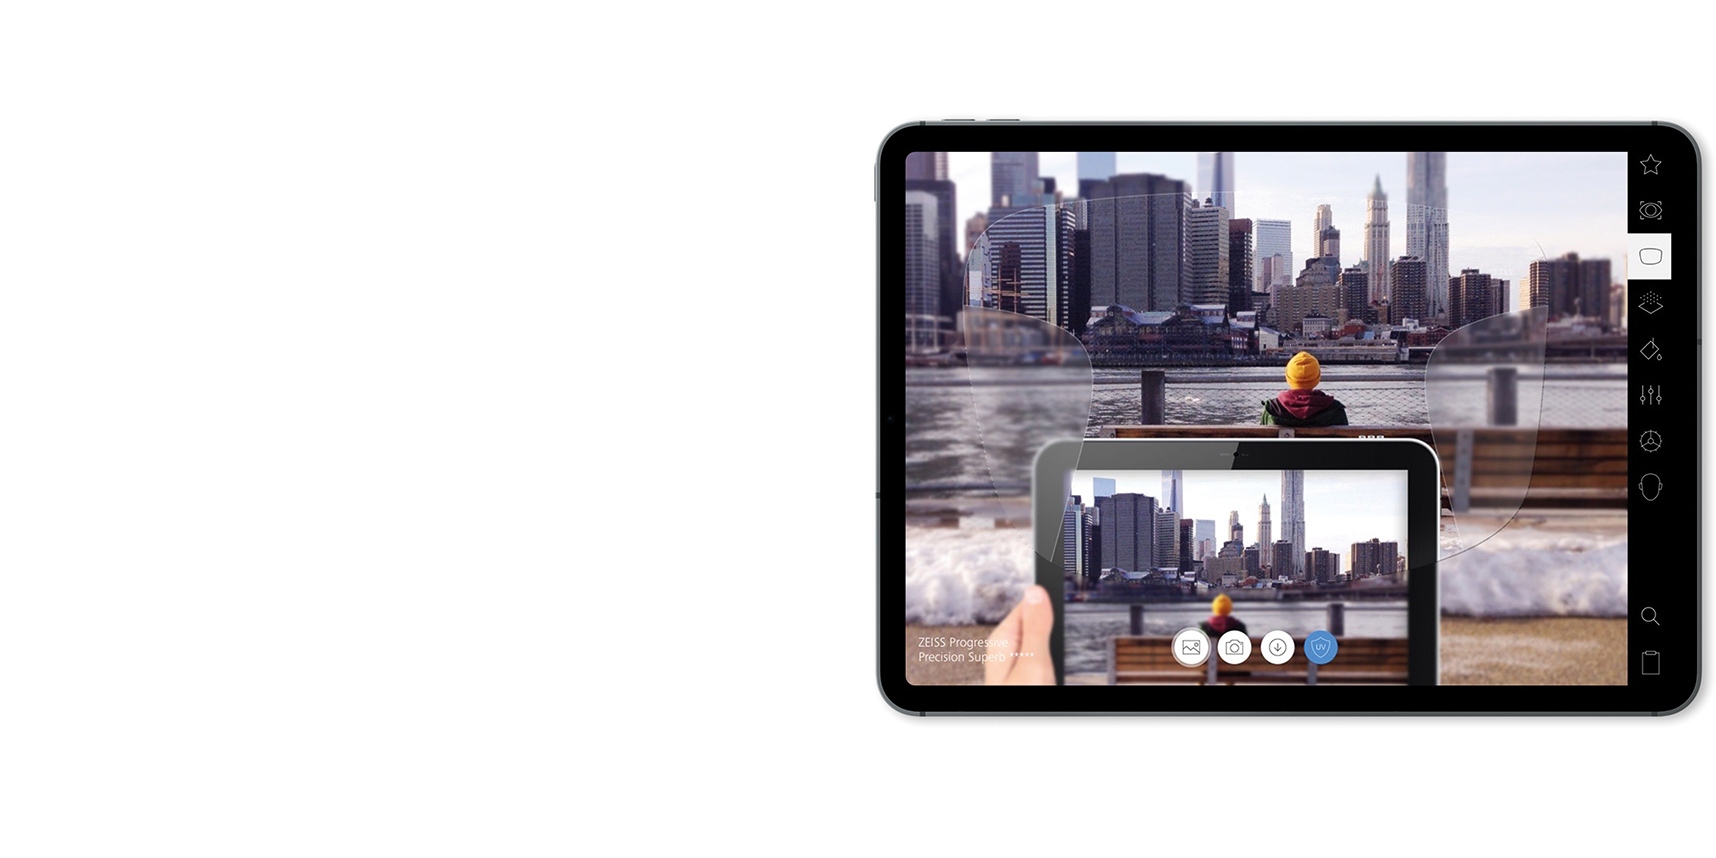 Demonstrație lentile ZEISS pe iPad în AR.